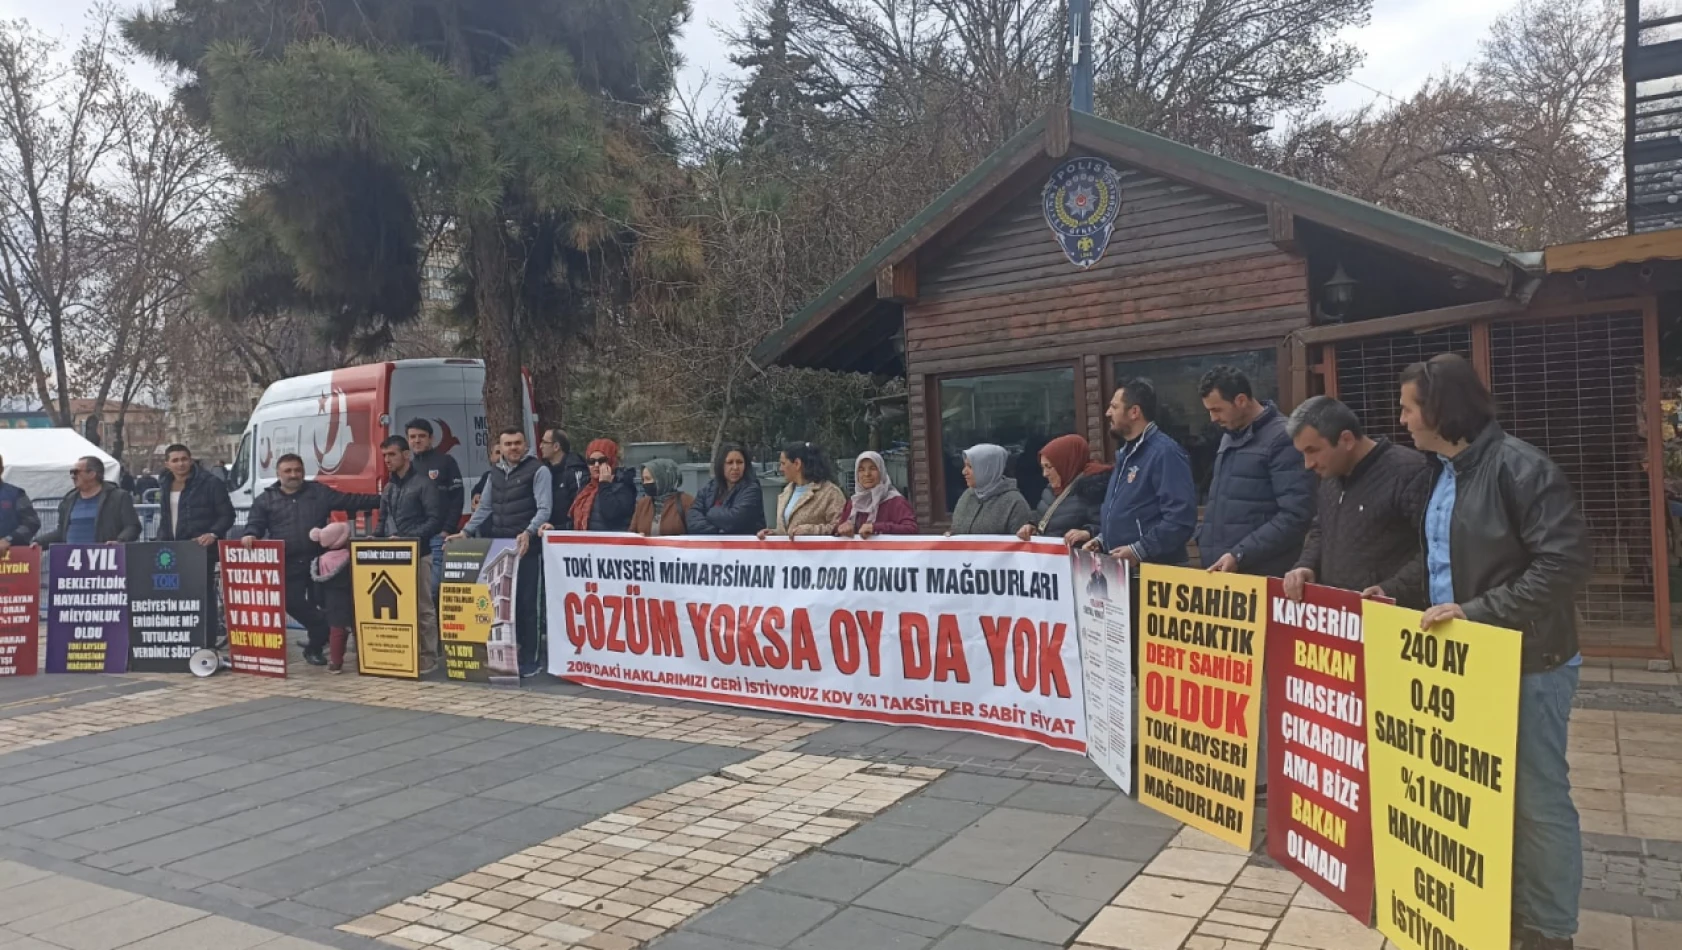 TOKİ mağdurları Kayseri Meydanı'ndan seslendi! - 'Çözüm yoksa oy yok!'